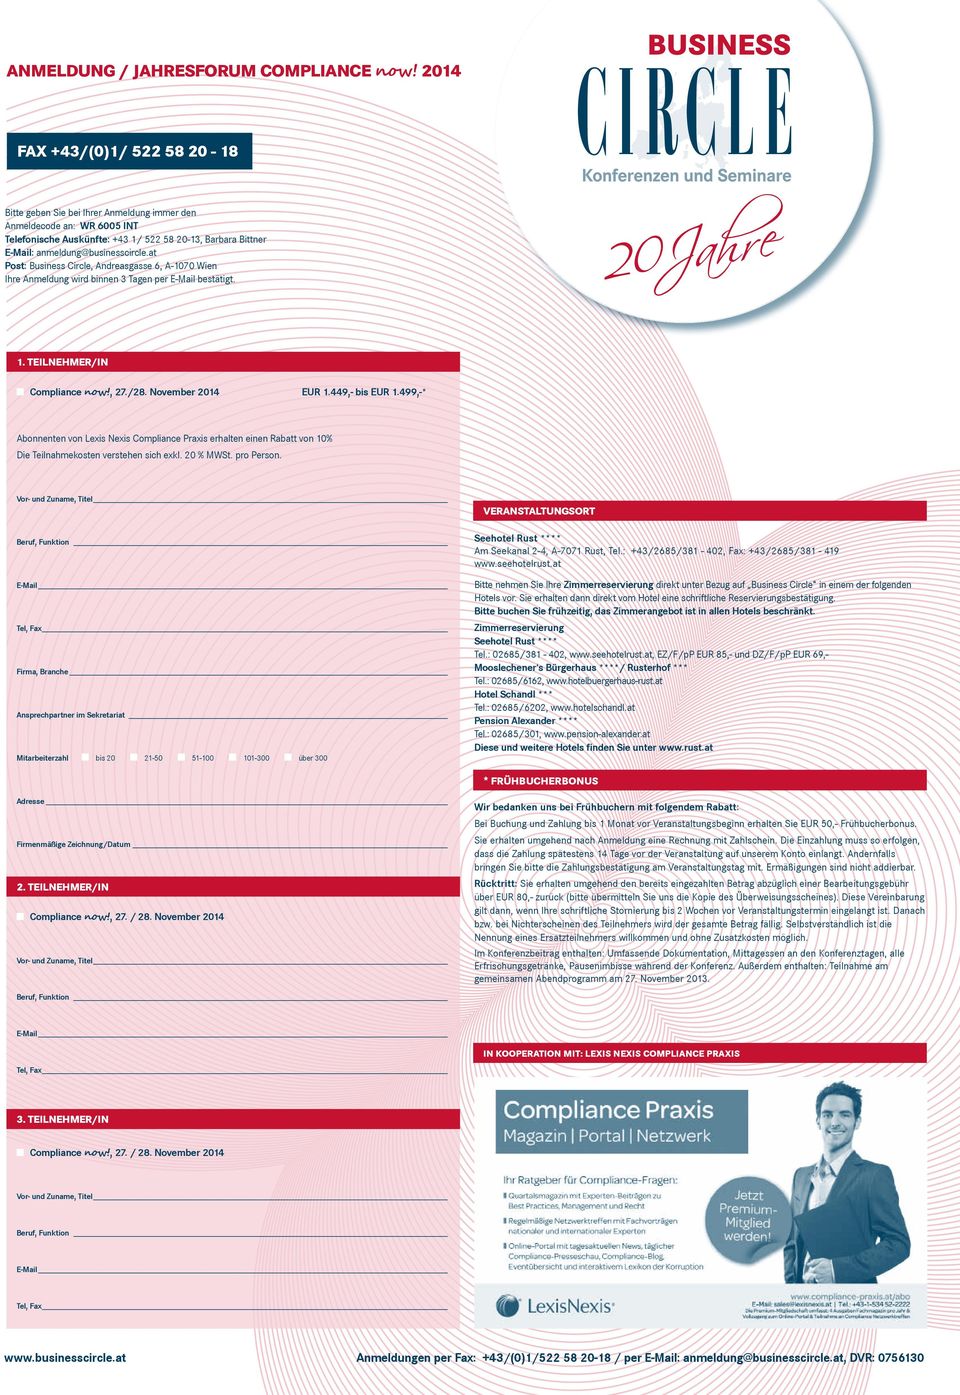 at Post: Business Circle, Andreasgasse 6, A-1070 Wien Ihre Anmeldung wird binnen 3 Tagen per E-Mail bestätigt. 1. Teilnehmer/in Compliance now!, 27./28. November 2014 EUR 1.449,- bis EUR 1.